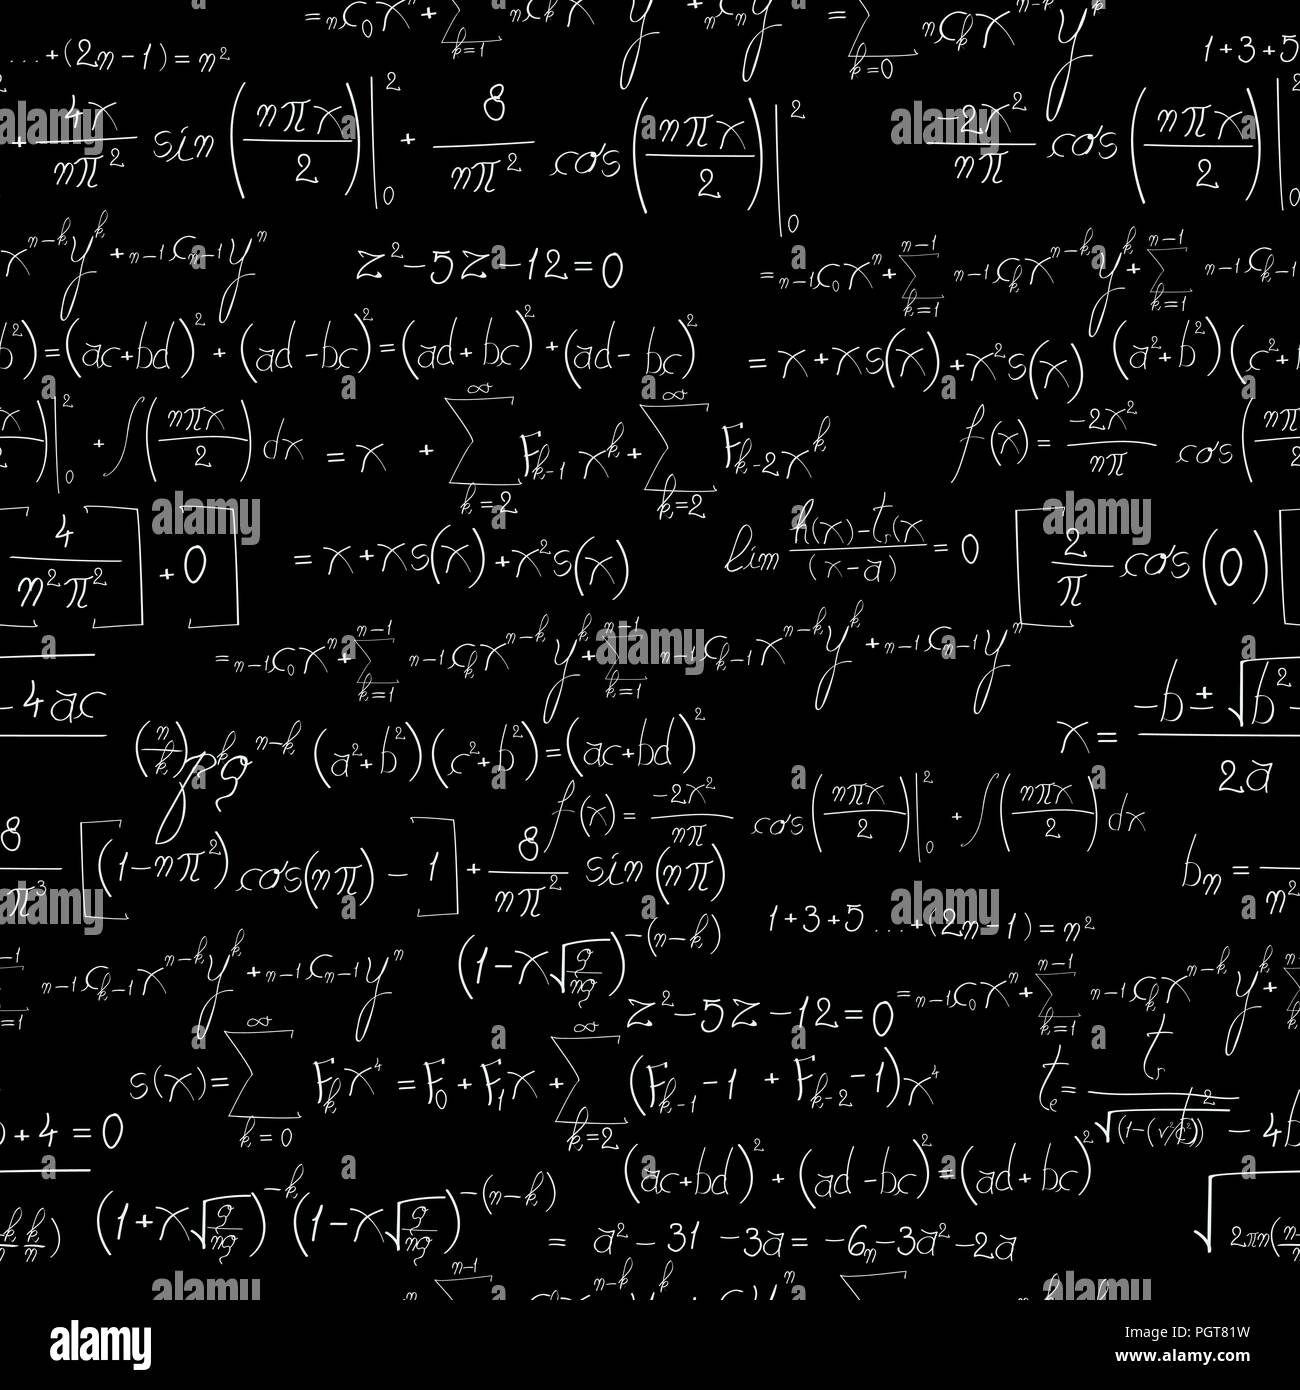 Nền đen của Chalk board mathematics đã tạo nên một không gian tuyệt đẹp và trang nhã cho các số liệu và phép tính. Hãy cùng khám phá hình ảnh để tìm những công thức và thuật toán mới lạ và thú vị nhất mà bạn chưa từng biết đến trước đây.